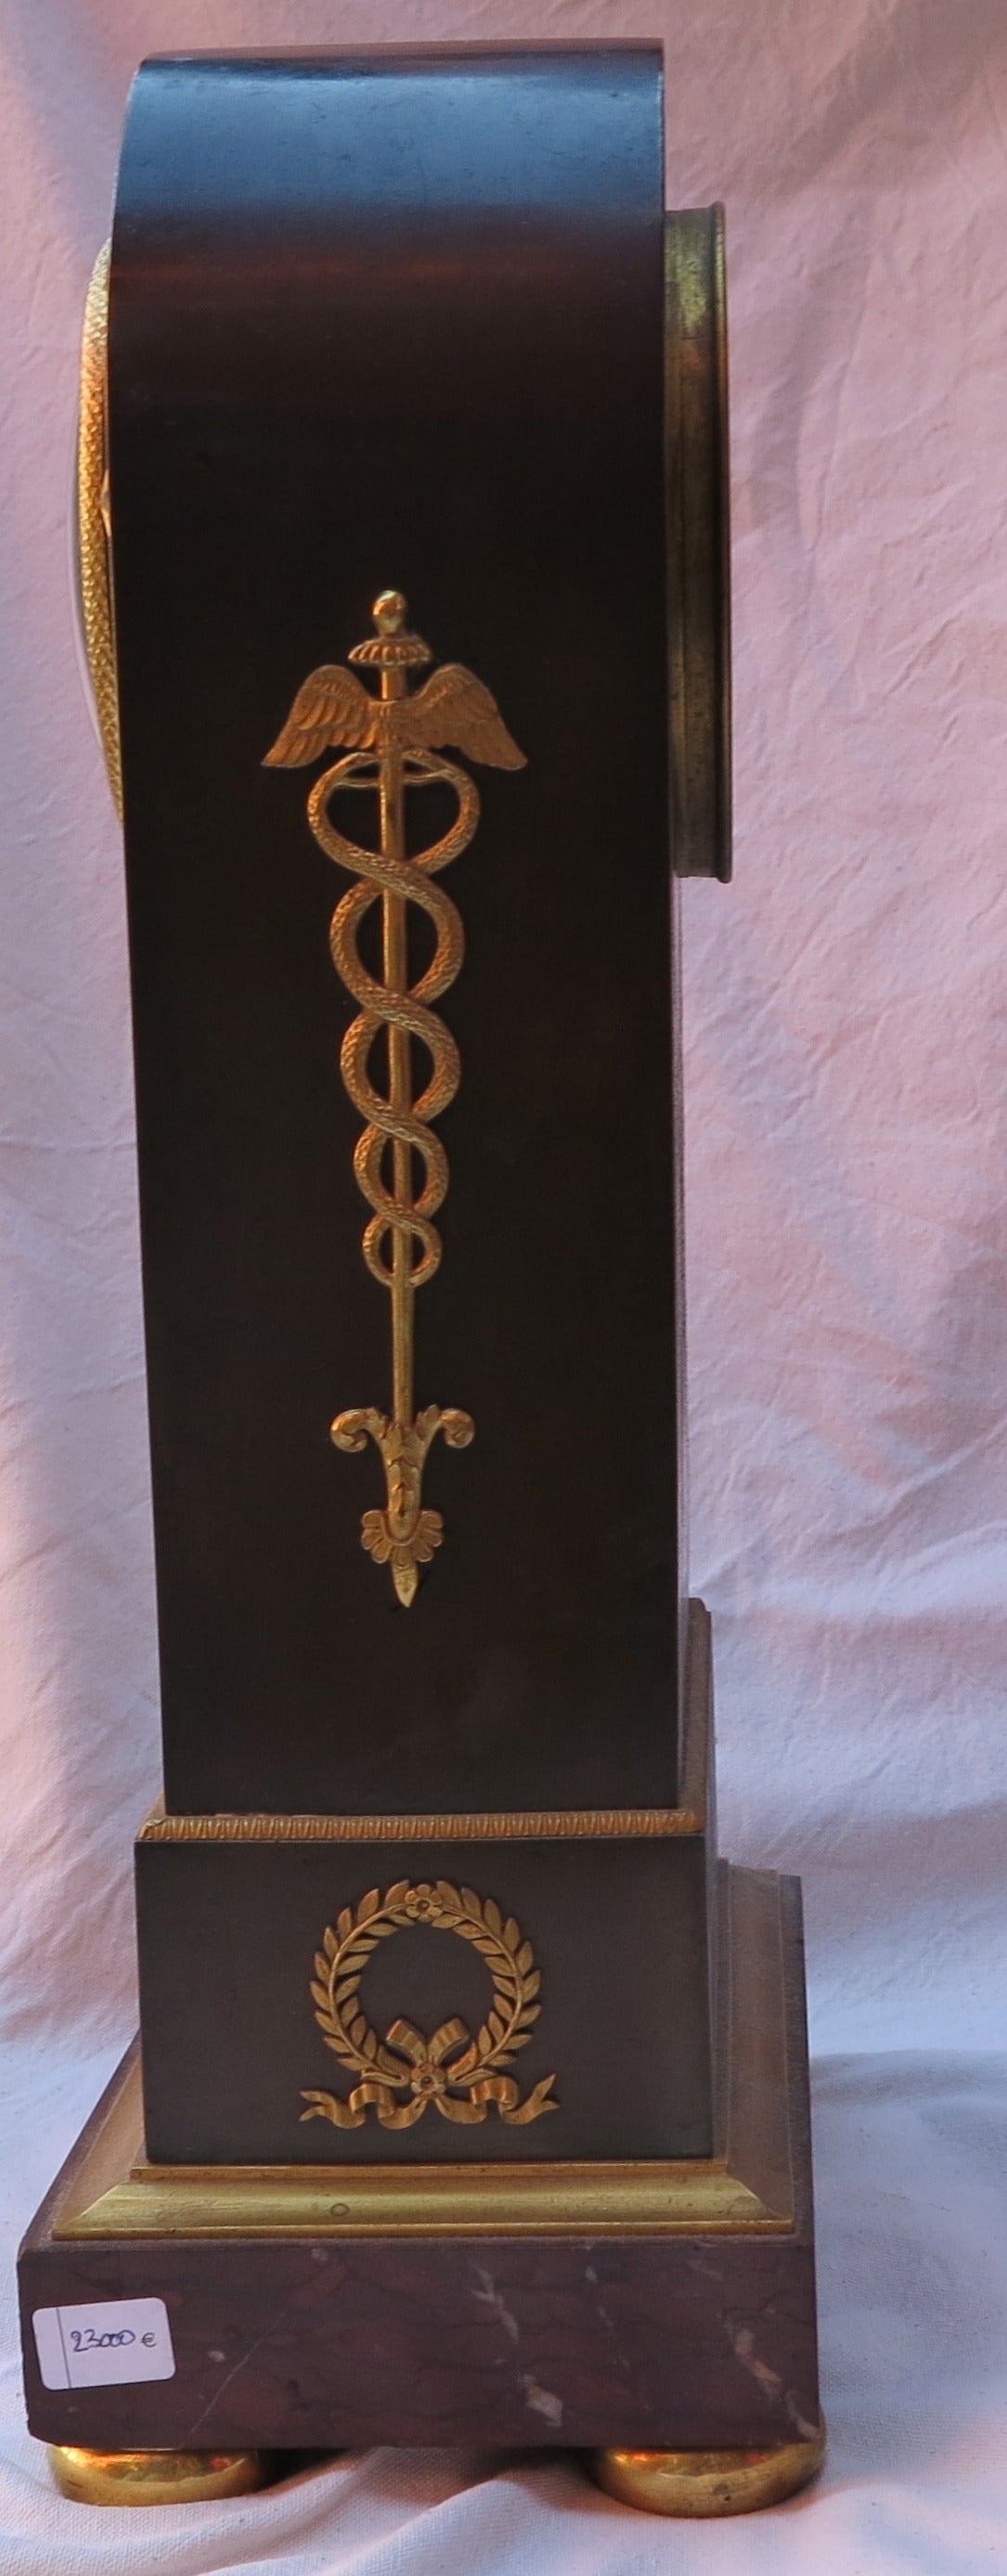 Français Le répertoire des horloges d'époque 1795 avec Ouroboros en bronze bicolore a été réalisé en en vente